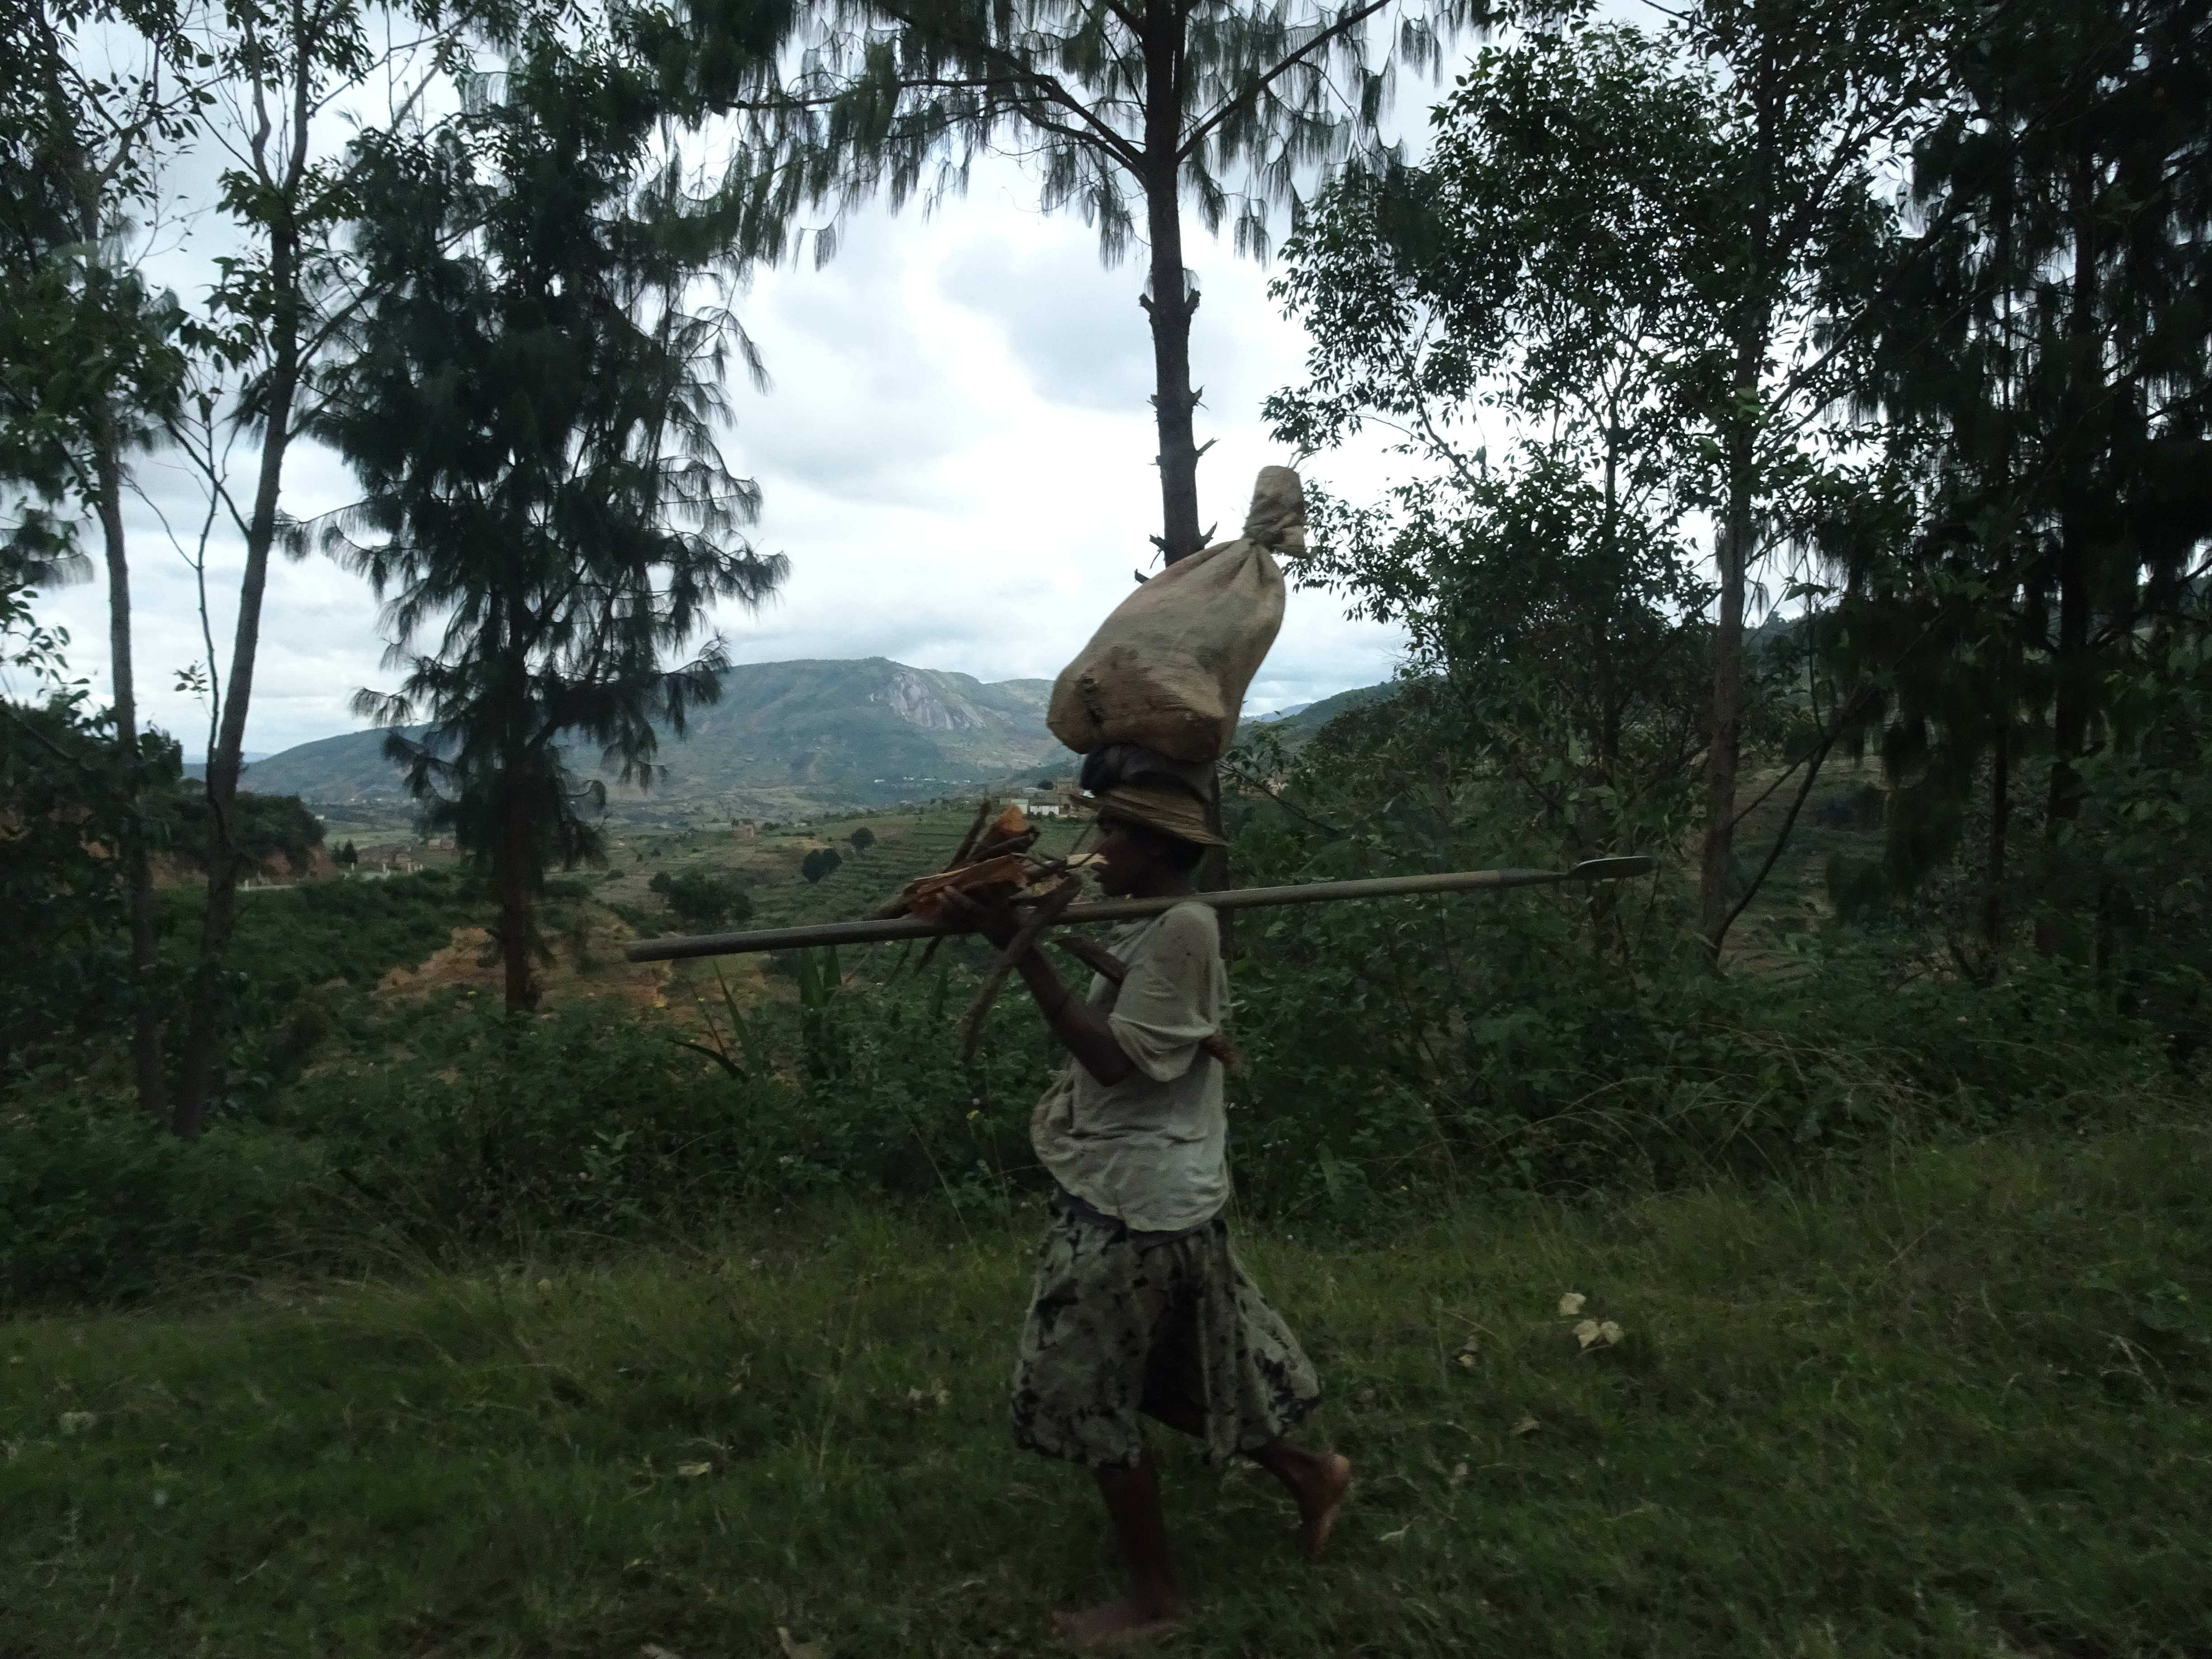 Le difficili condizioni di vita costringono spesso gli abitanti del Madagascar a dover trasportare carichi per molti chilometri per poter lavorare, anche quando si tratta di donne incinte (Madagascar, 2018).